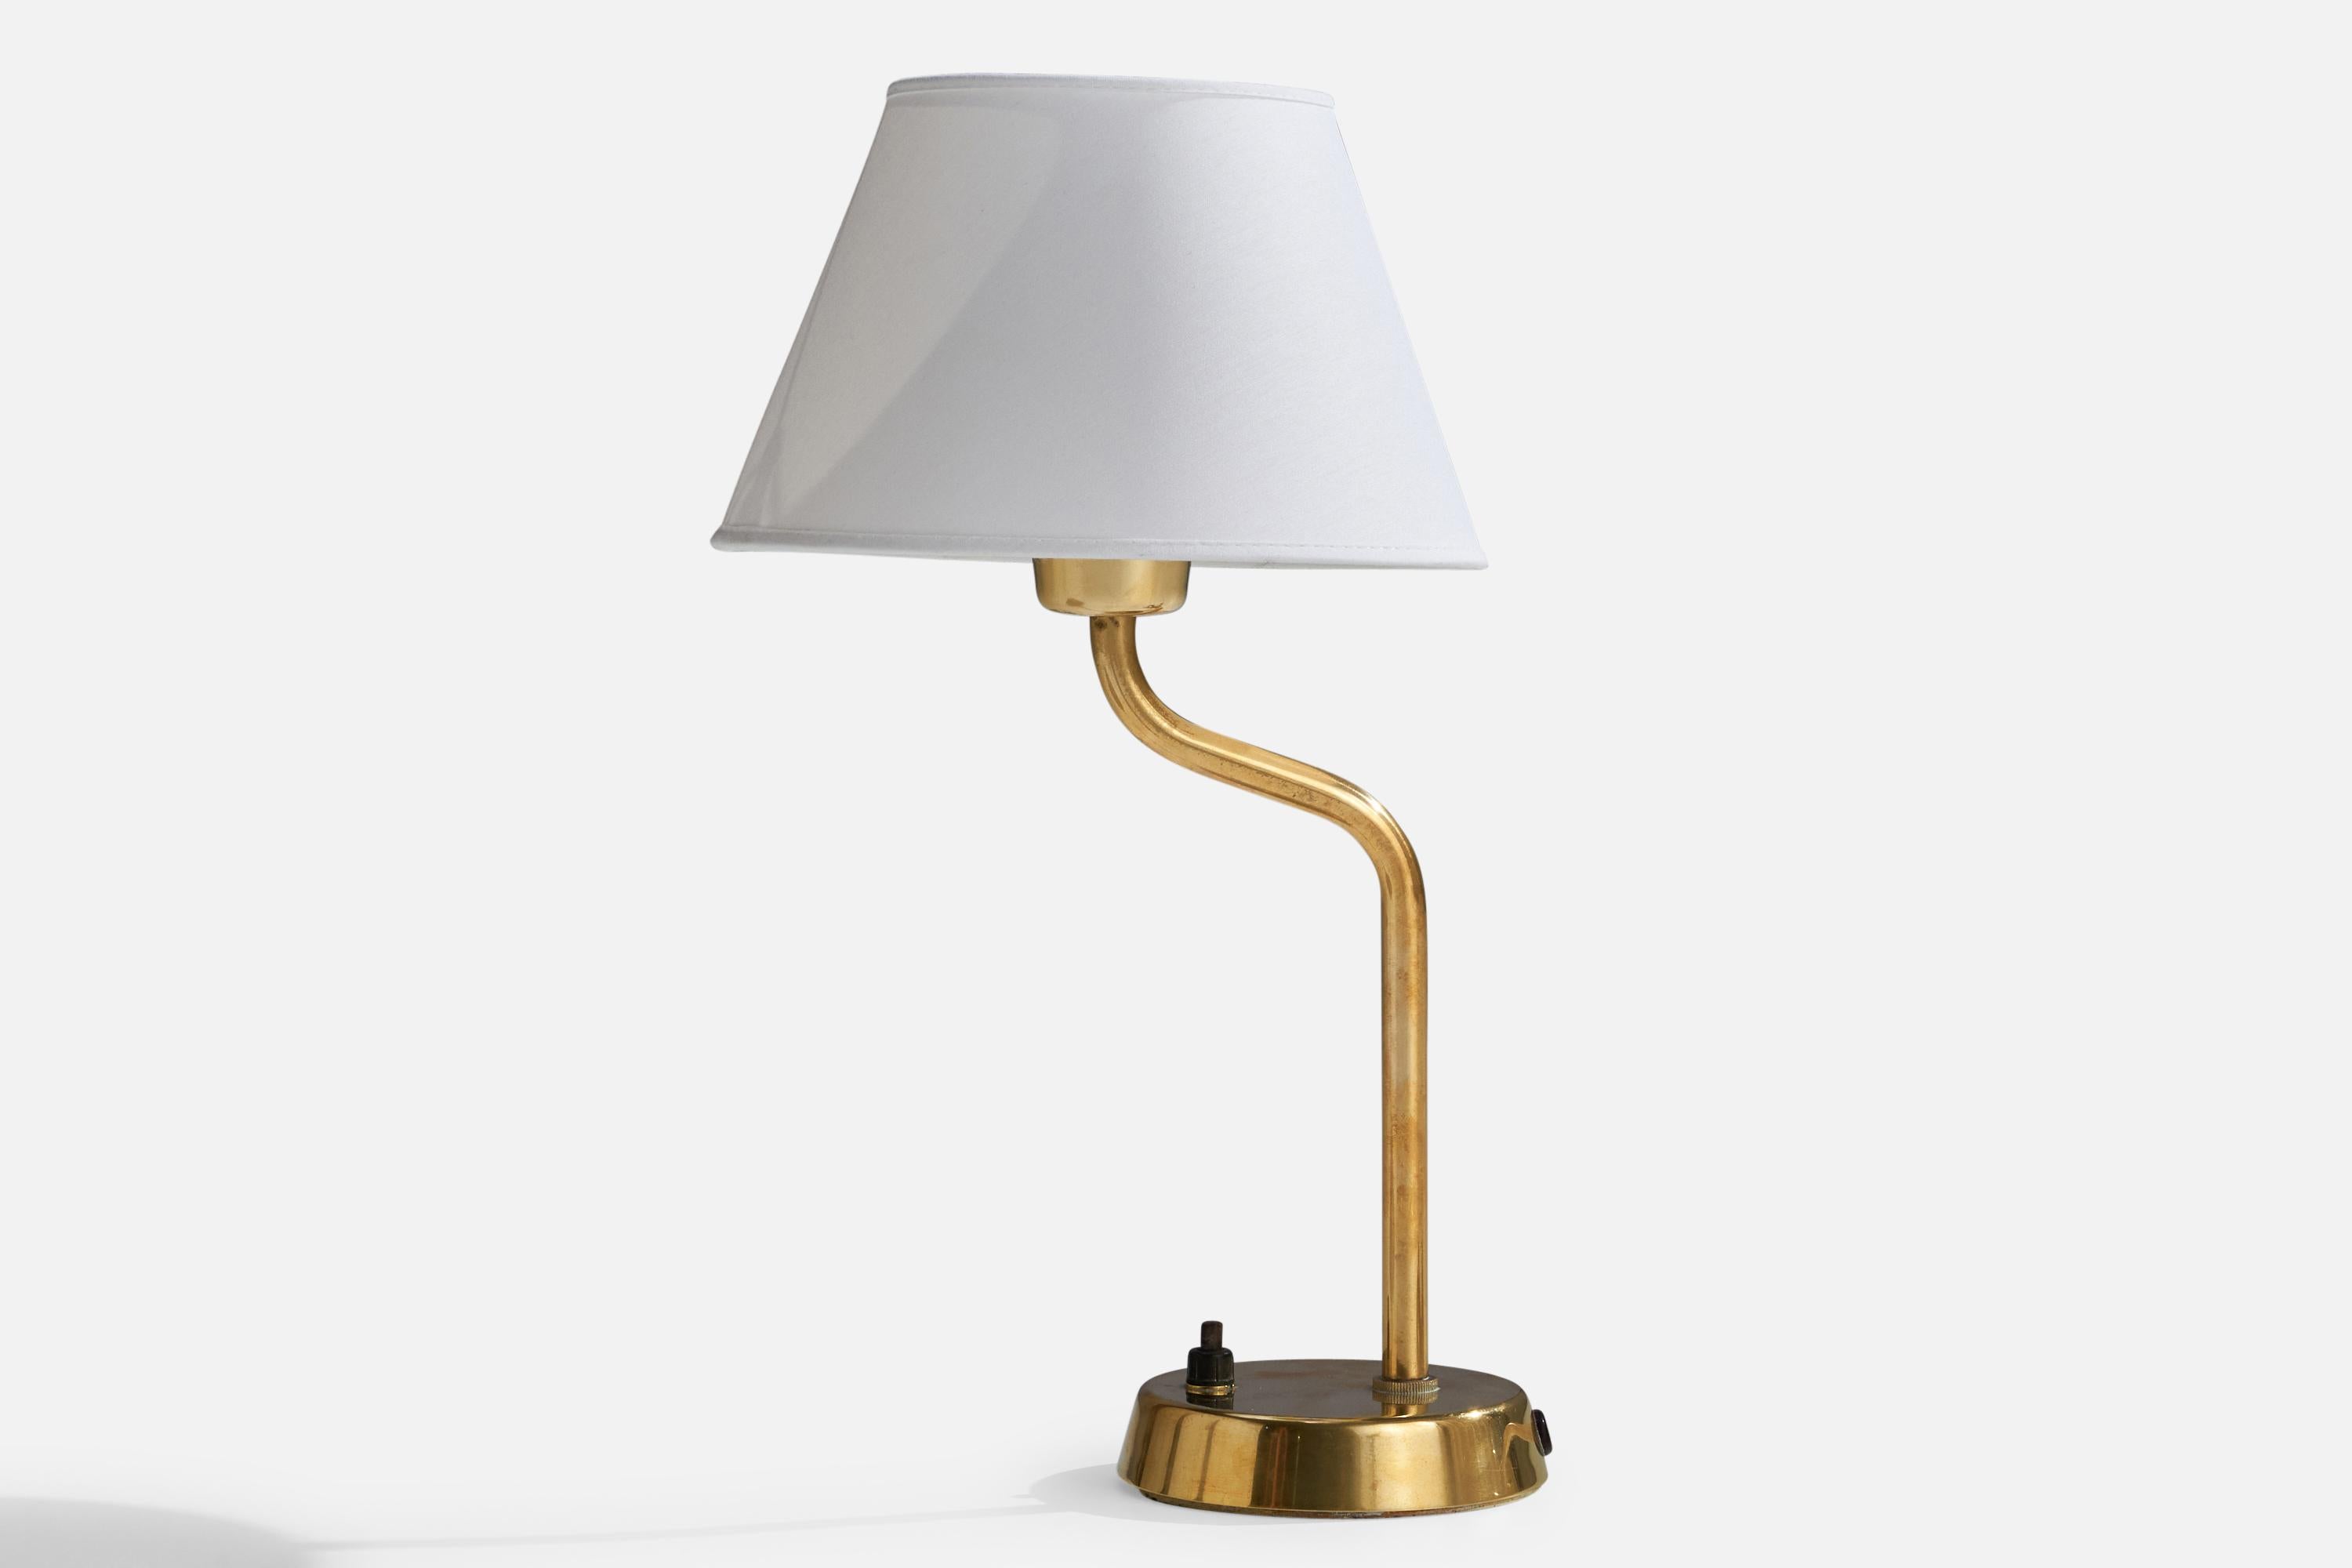 Lampe de table en laiton et tissu blanc conçue et produite par ASEA, Suède, années 1940.

Dimensions de la lampe (pouces) : 12